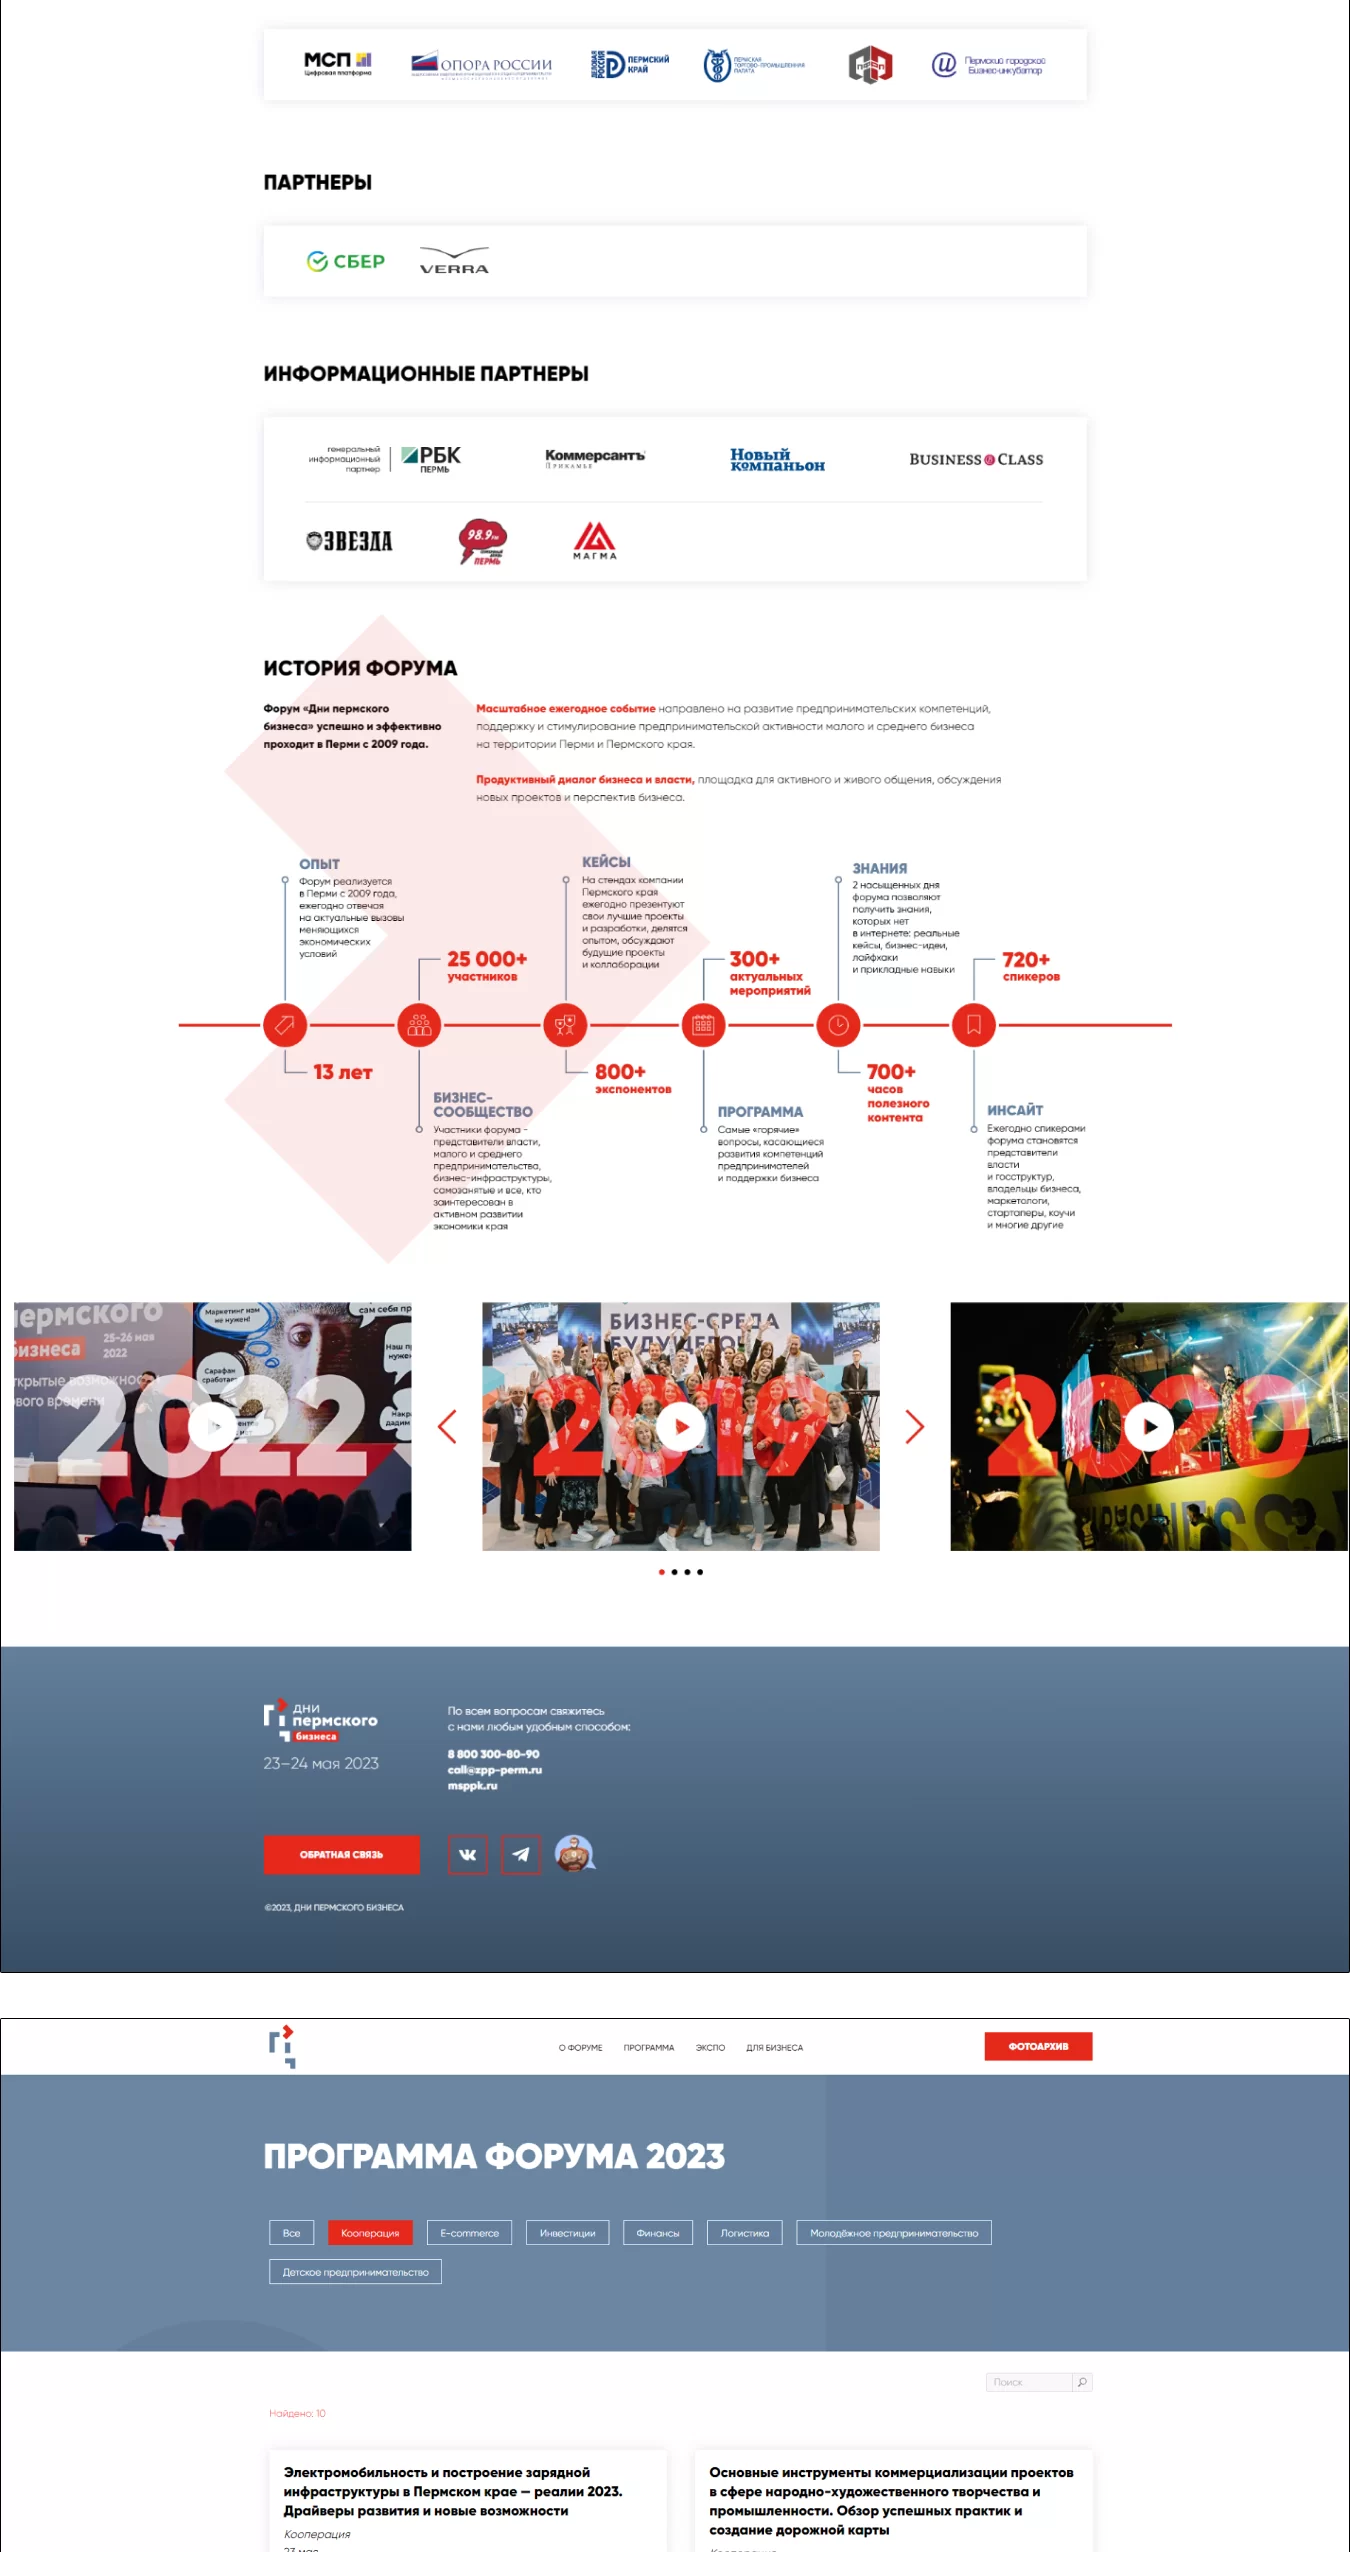 Разработка сайта на TILDA — Дни пермского бизнеса 2023 (НО «Пермский фонд развития предпринимательства»)